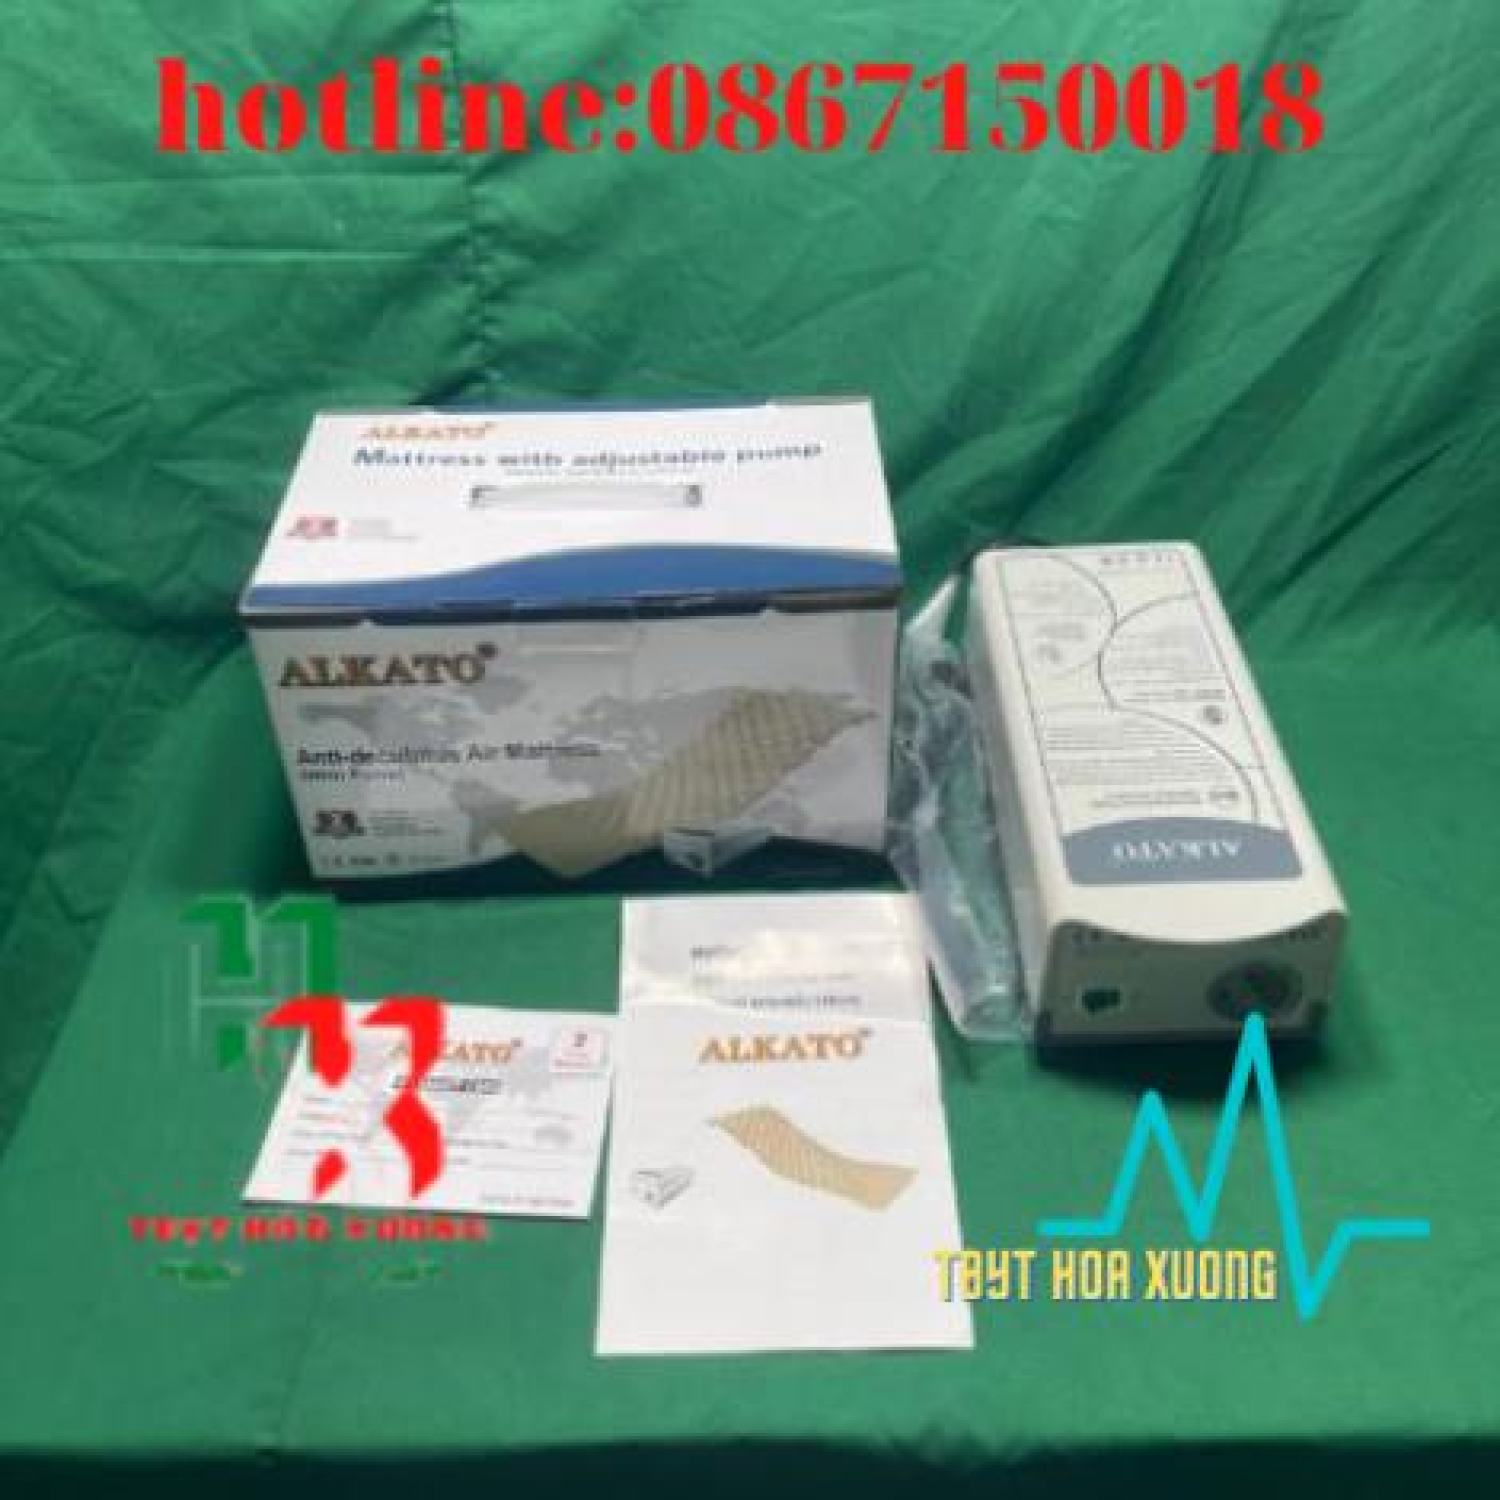 Đệm hơi chống loét ALKATO HF6P01 - Nệm hơi chống loét cho người bệnh